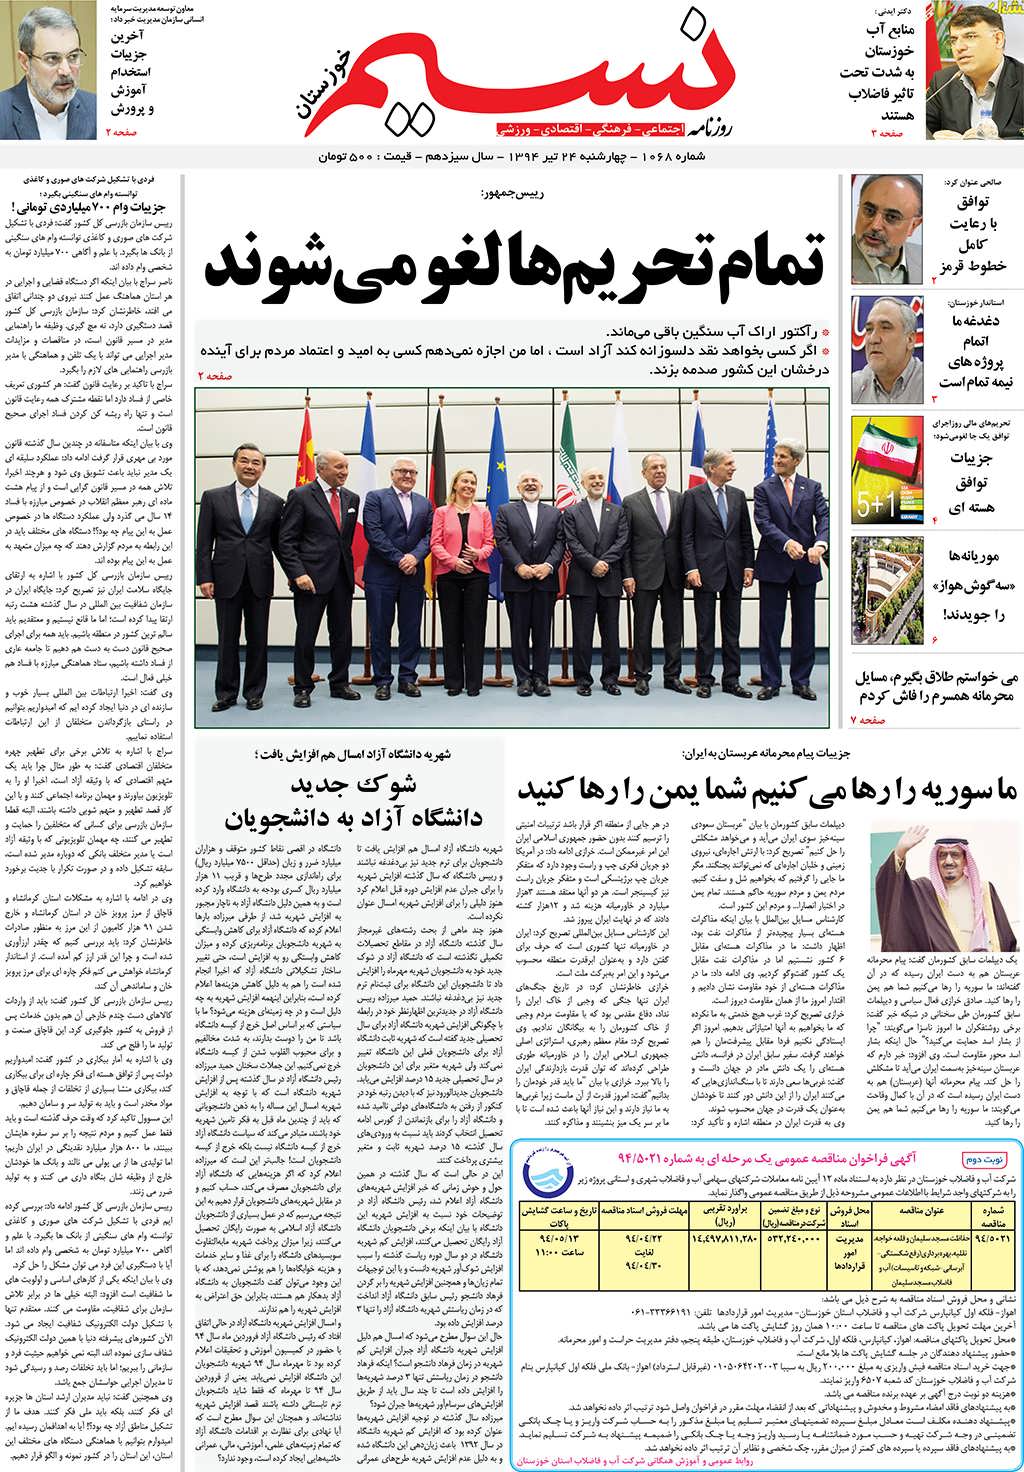 صفحه اصلی روزنامه نسیم شماره 1068